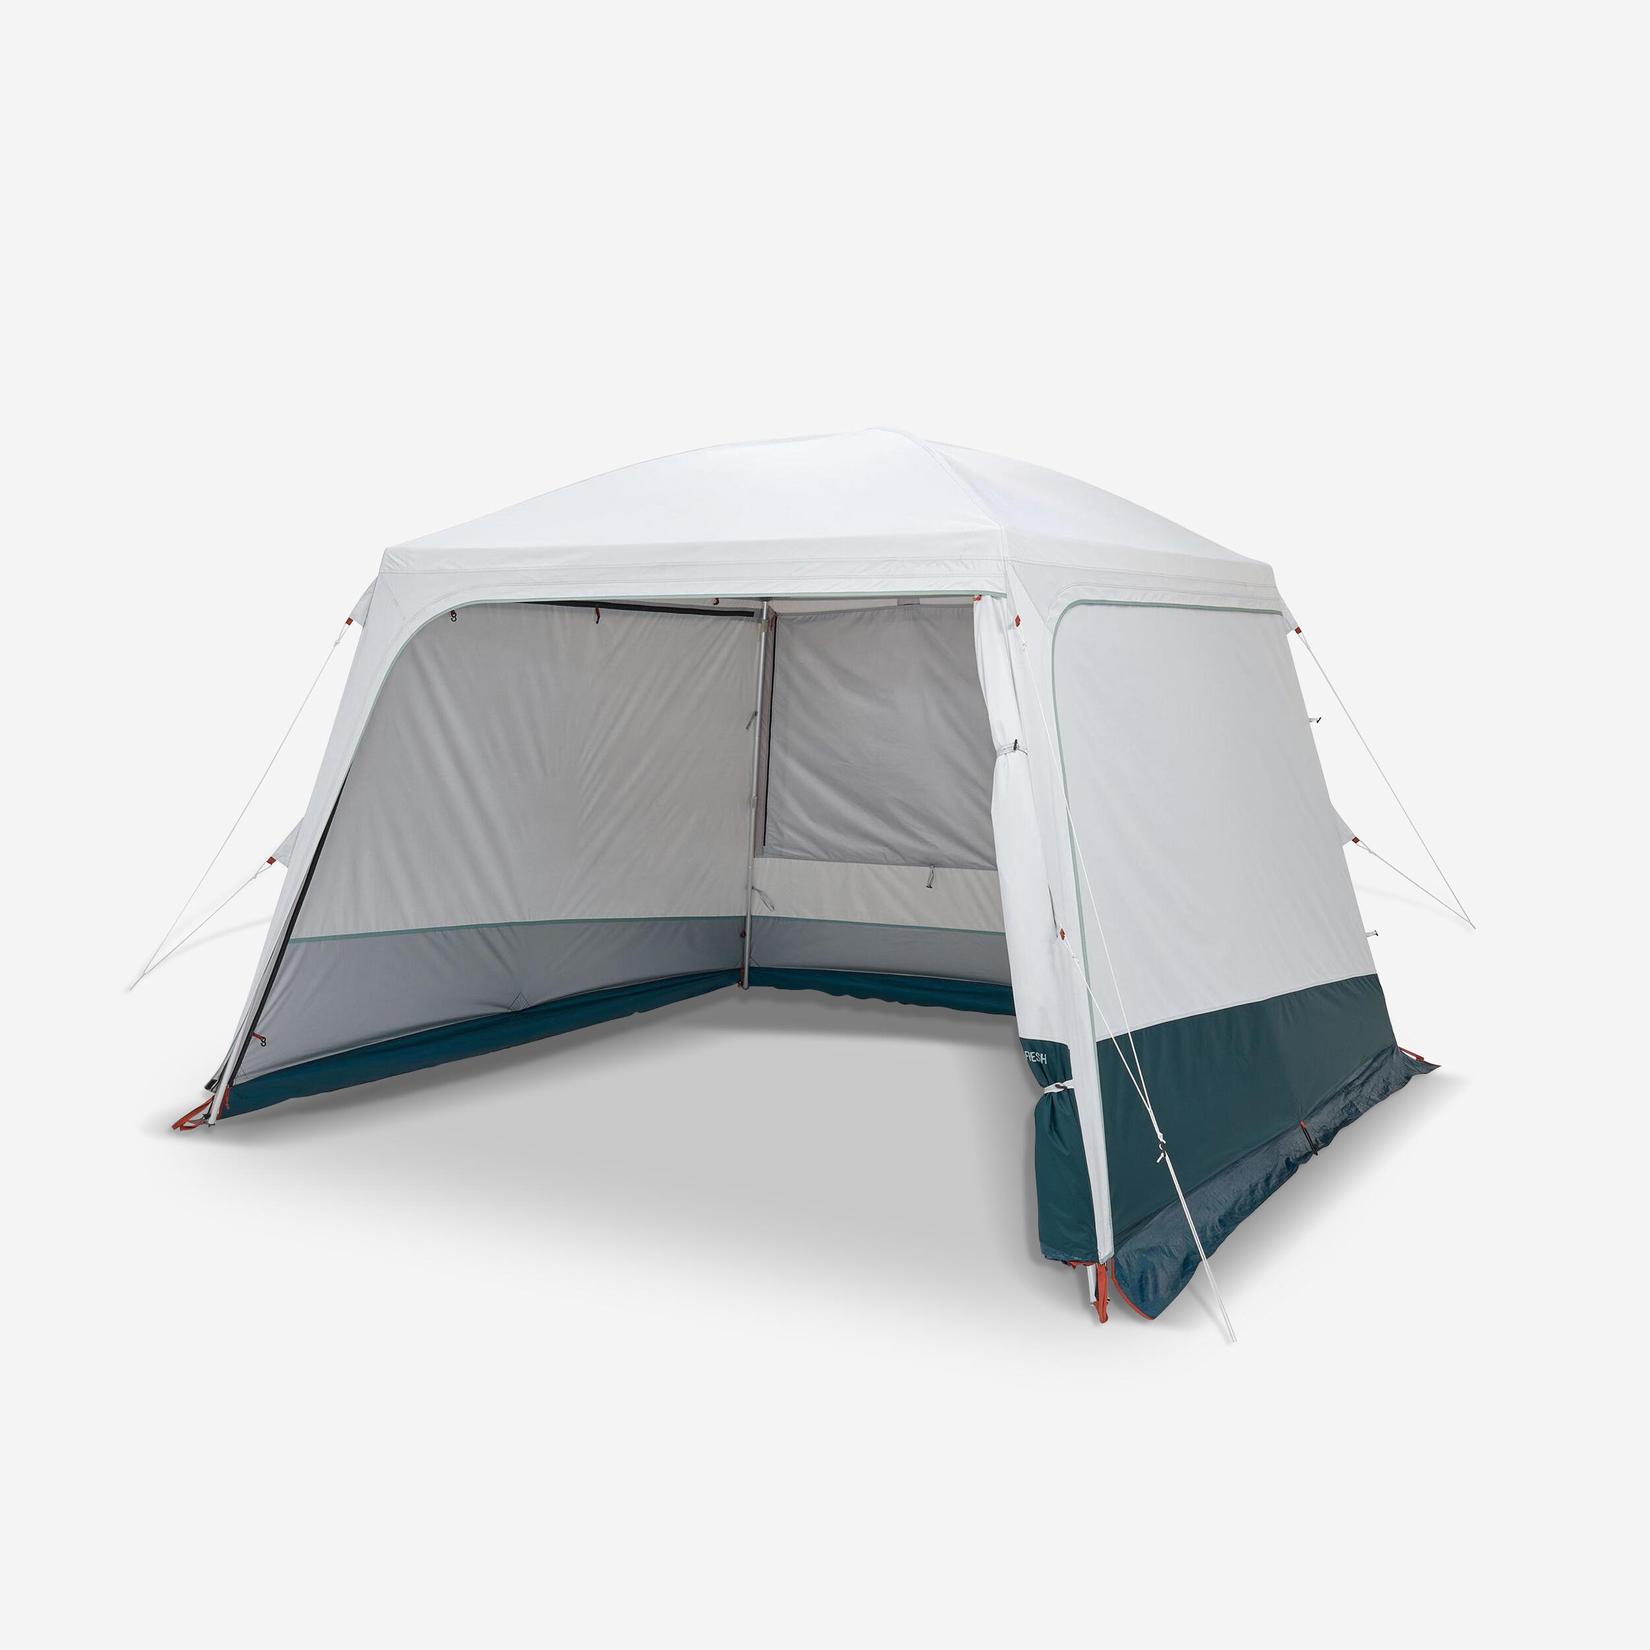 Allrum med tältbågar för camping – Arpenaz Base Fresh – Tio Personer för 2699 kr på Decathlon